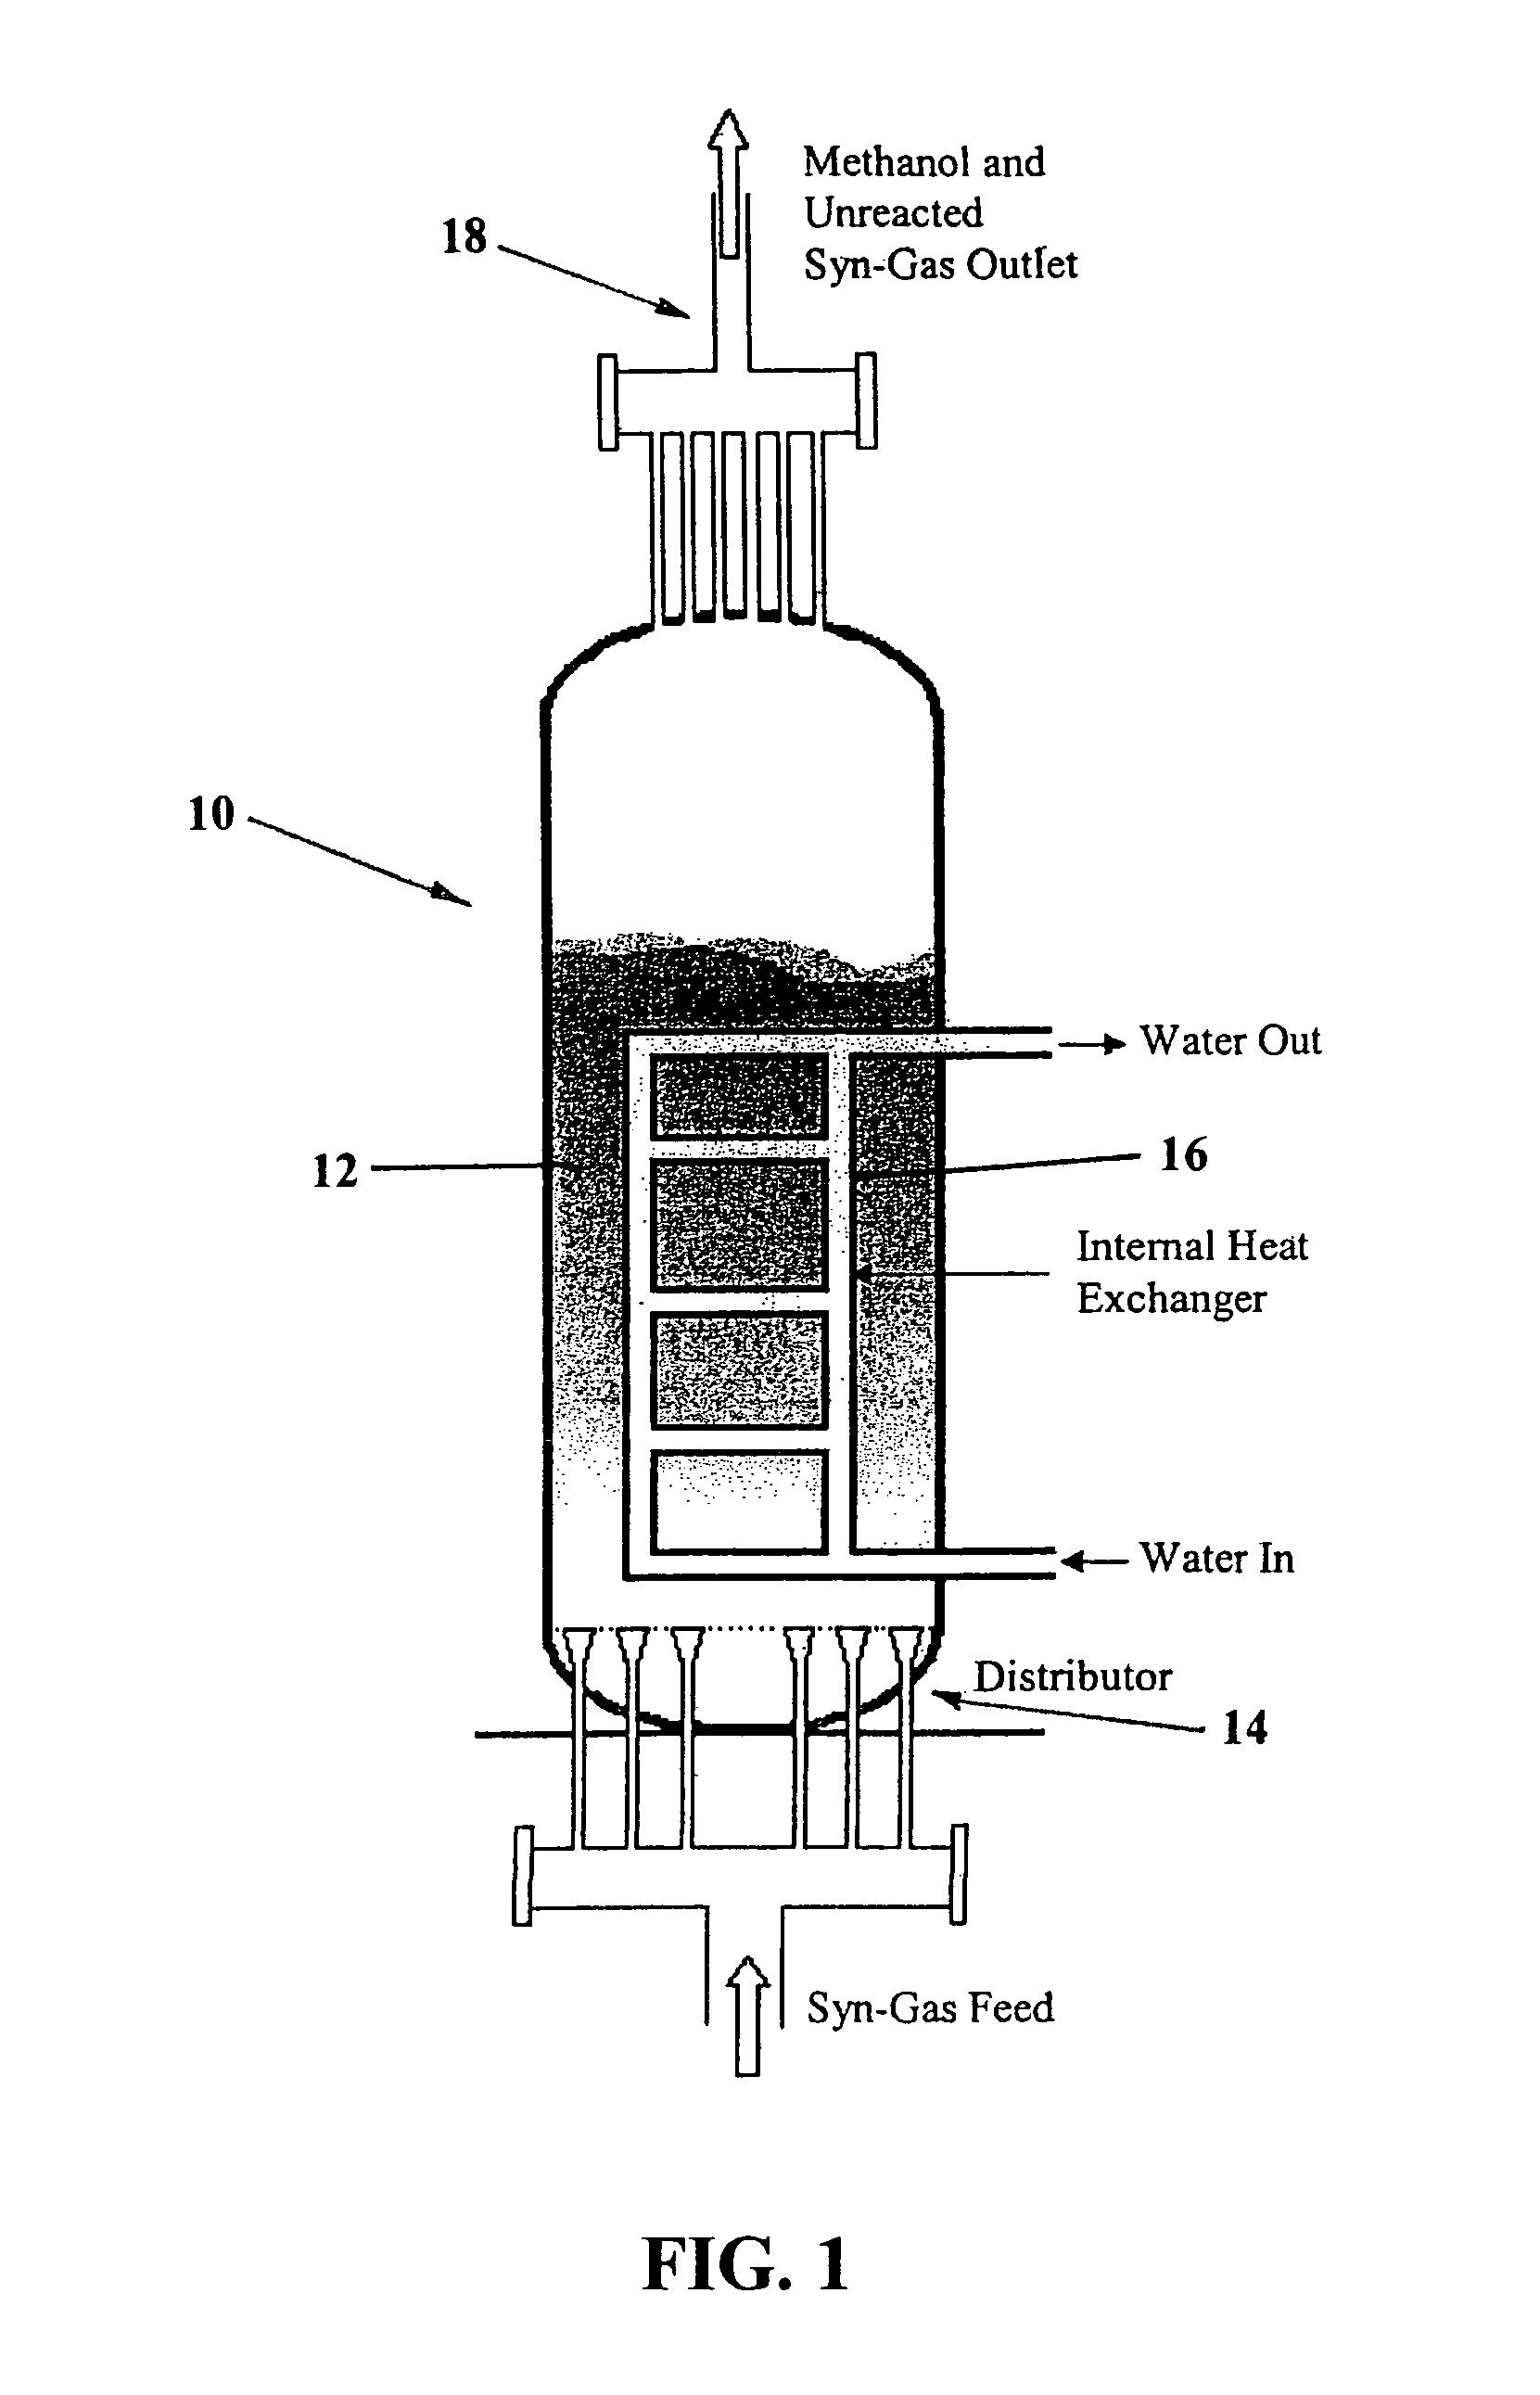 Design of slurry bubble column reactors: novel technique for optimum catalyst size selection contractual origin of the invention